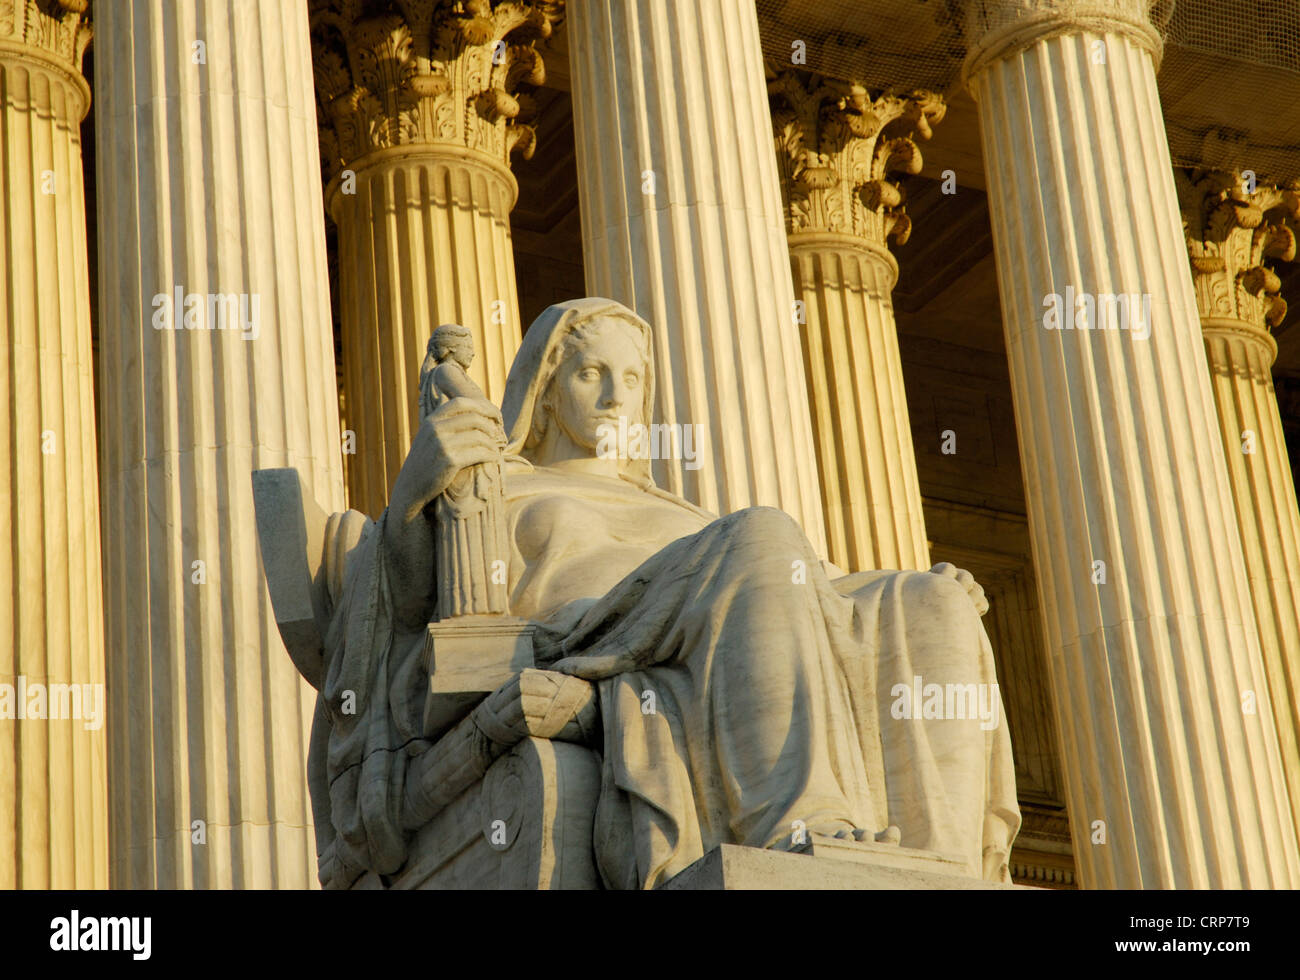 United States Supreme Court Gebäude mit Betrachtung der Justiz statue Stockfoto